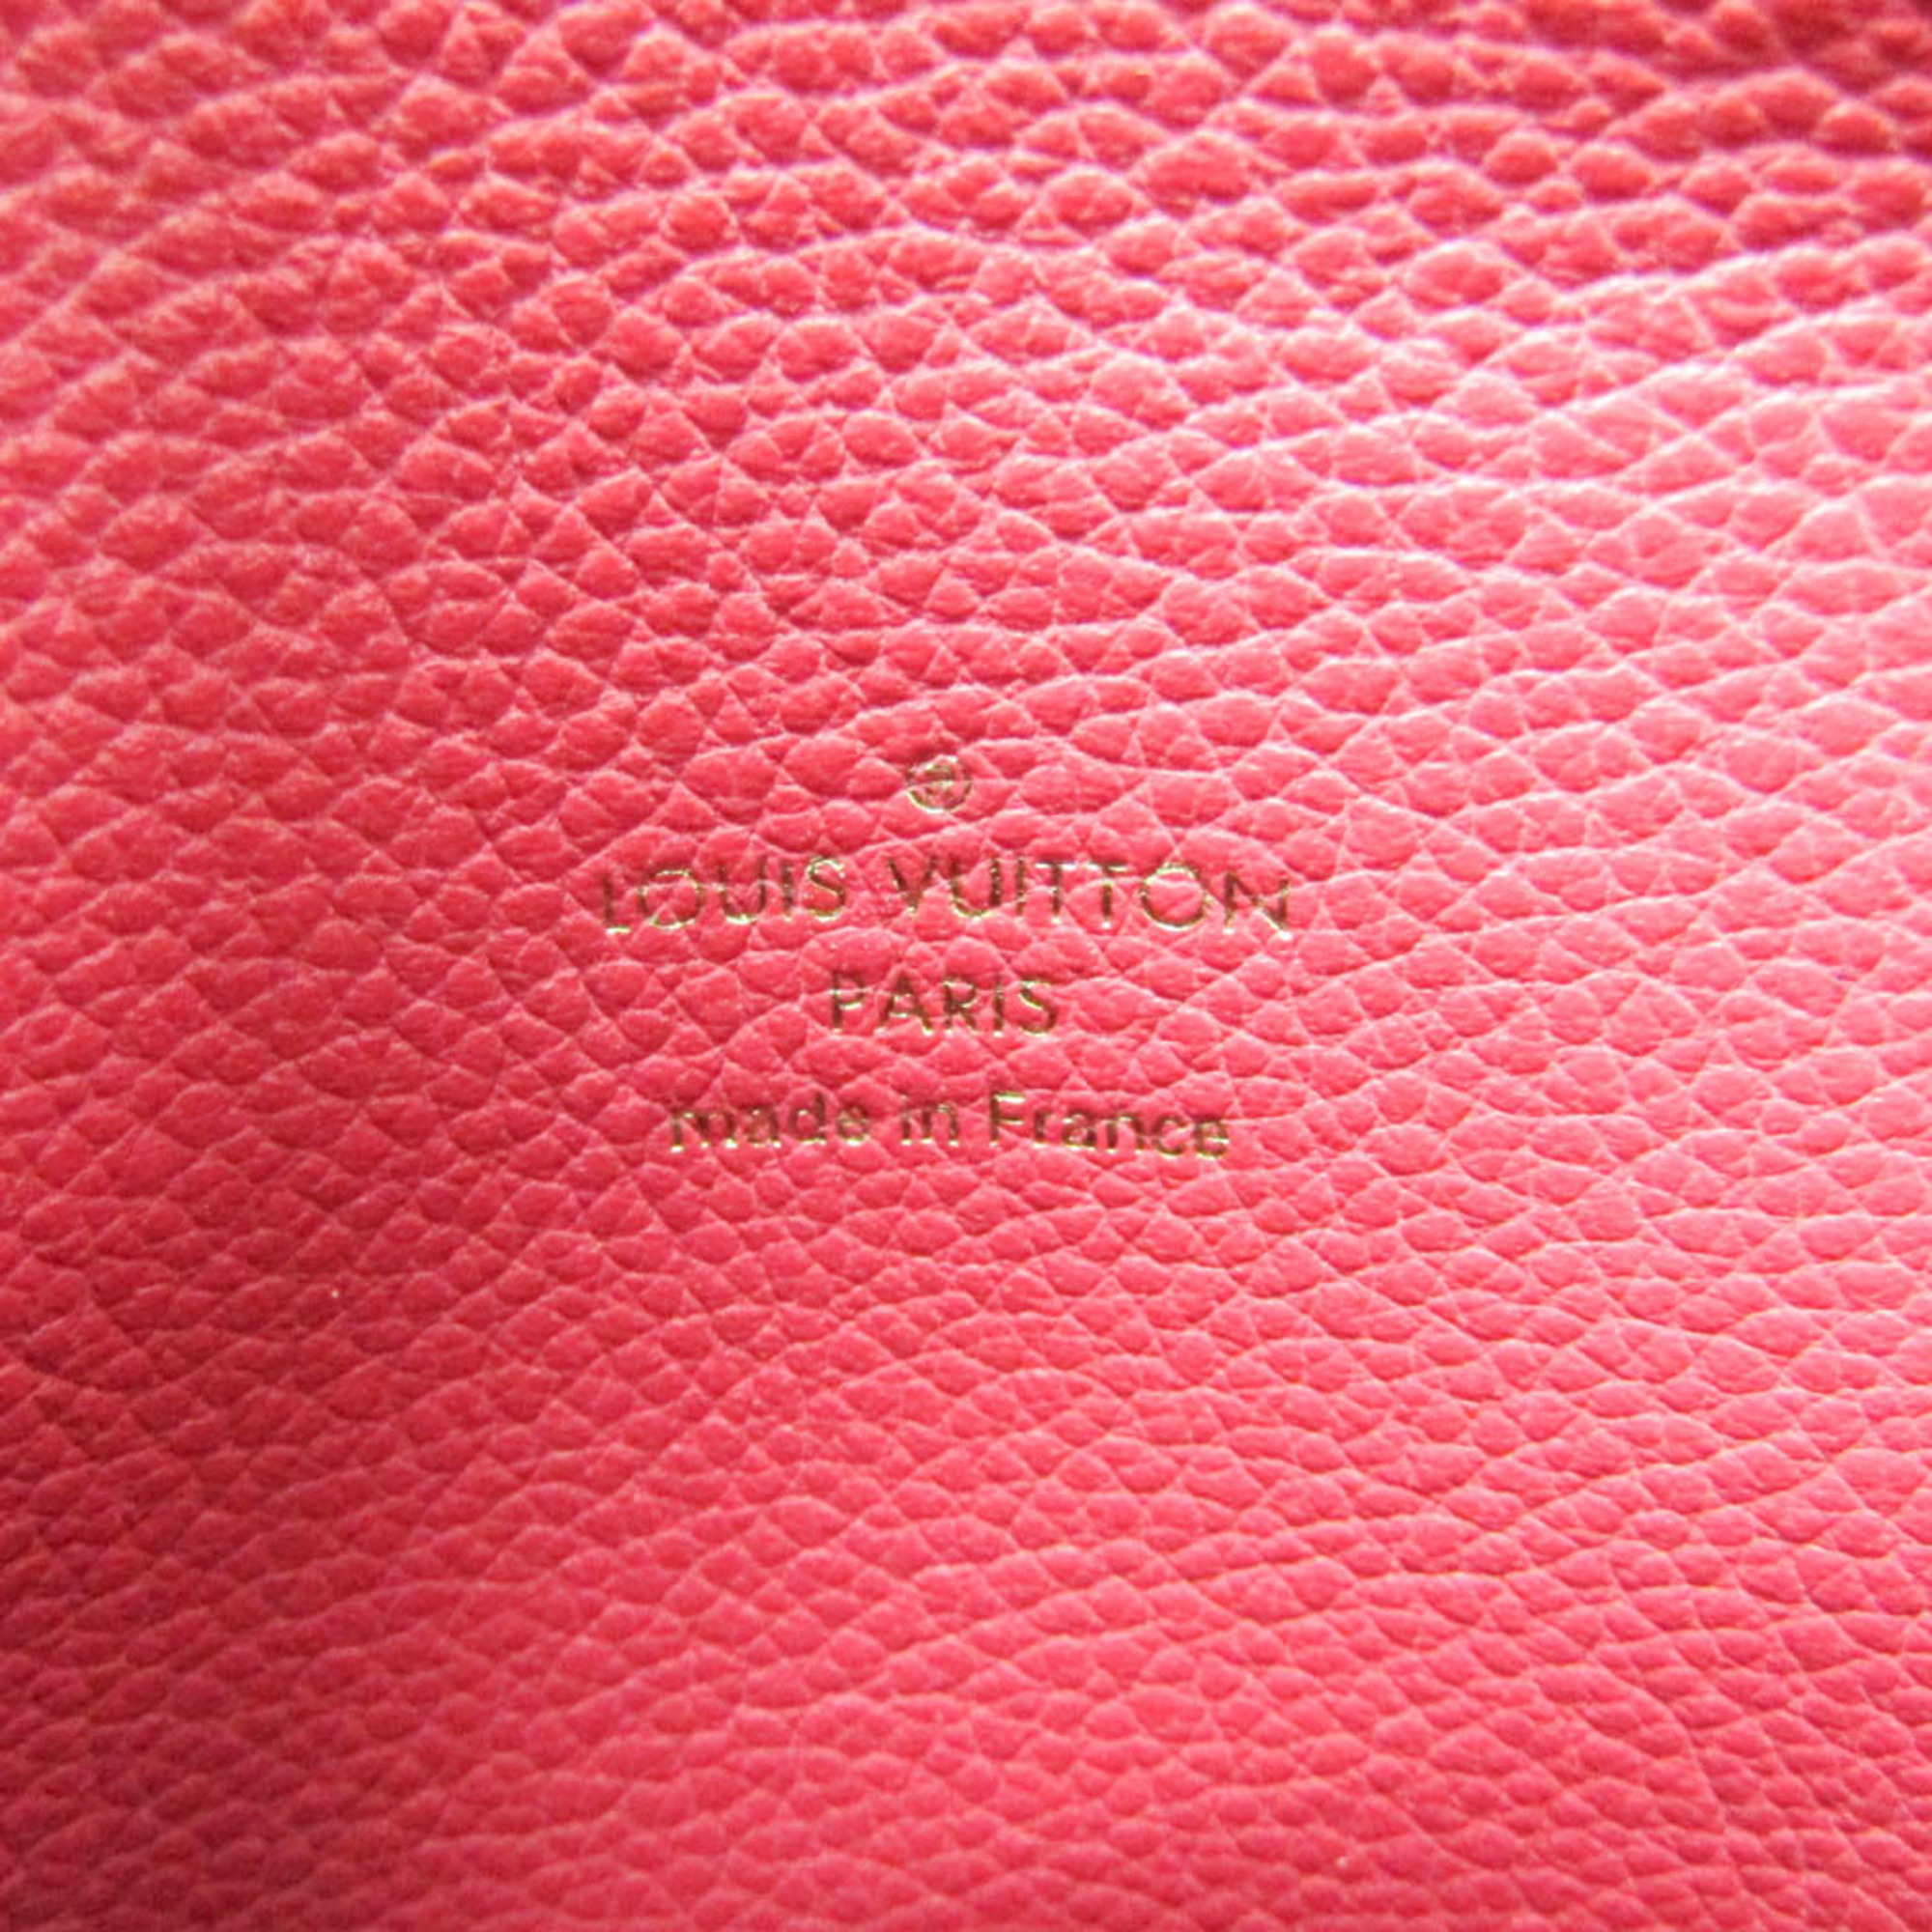 ルイ・ヴィトン(Louis Vuitton) ポシェット・リヴェットGM M61477 レディース ポーチ ベージュ